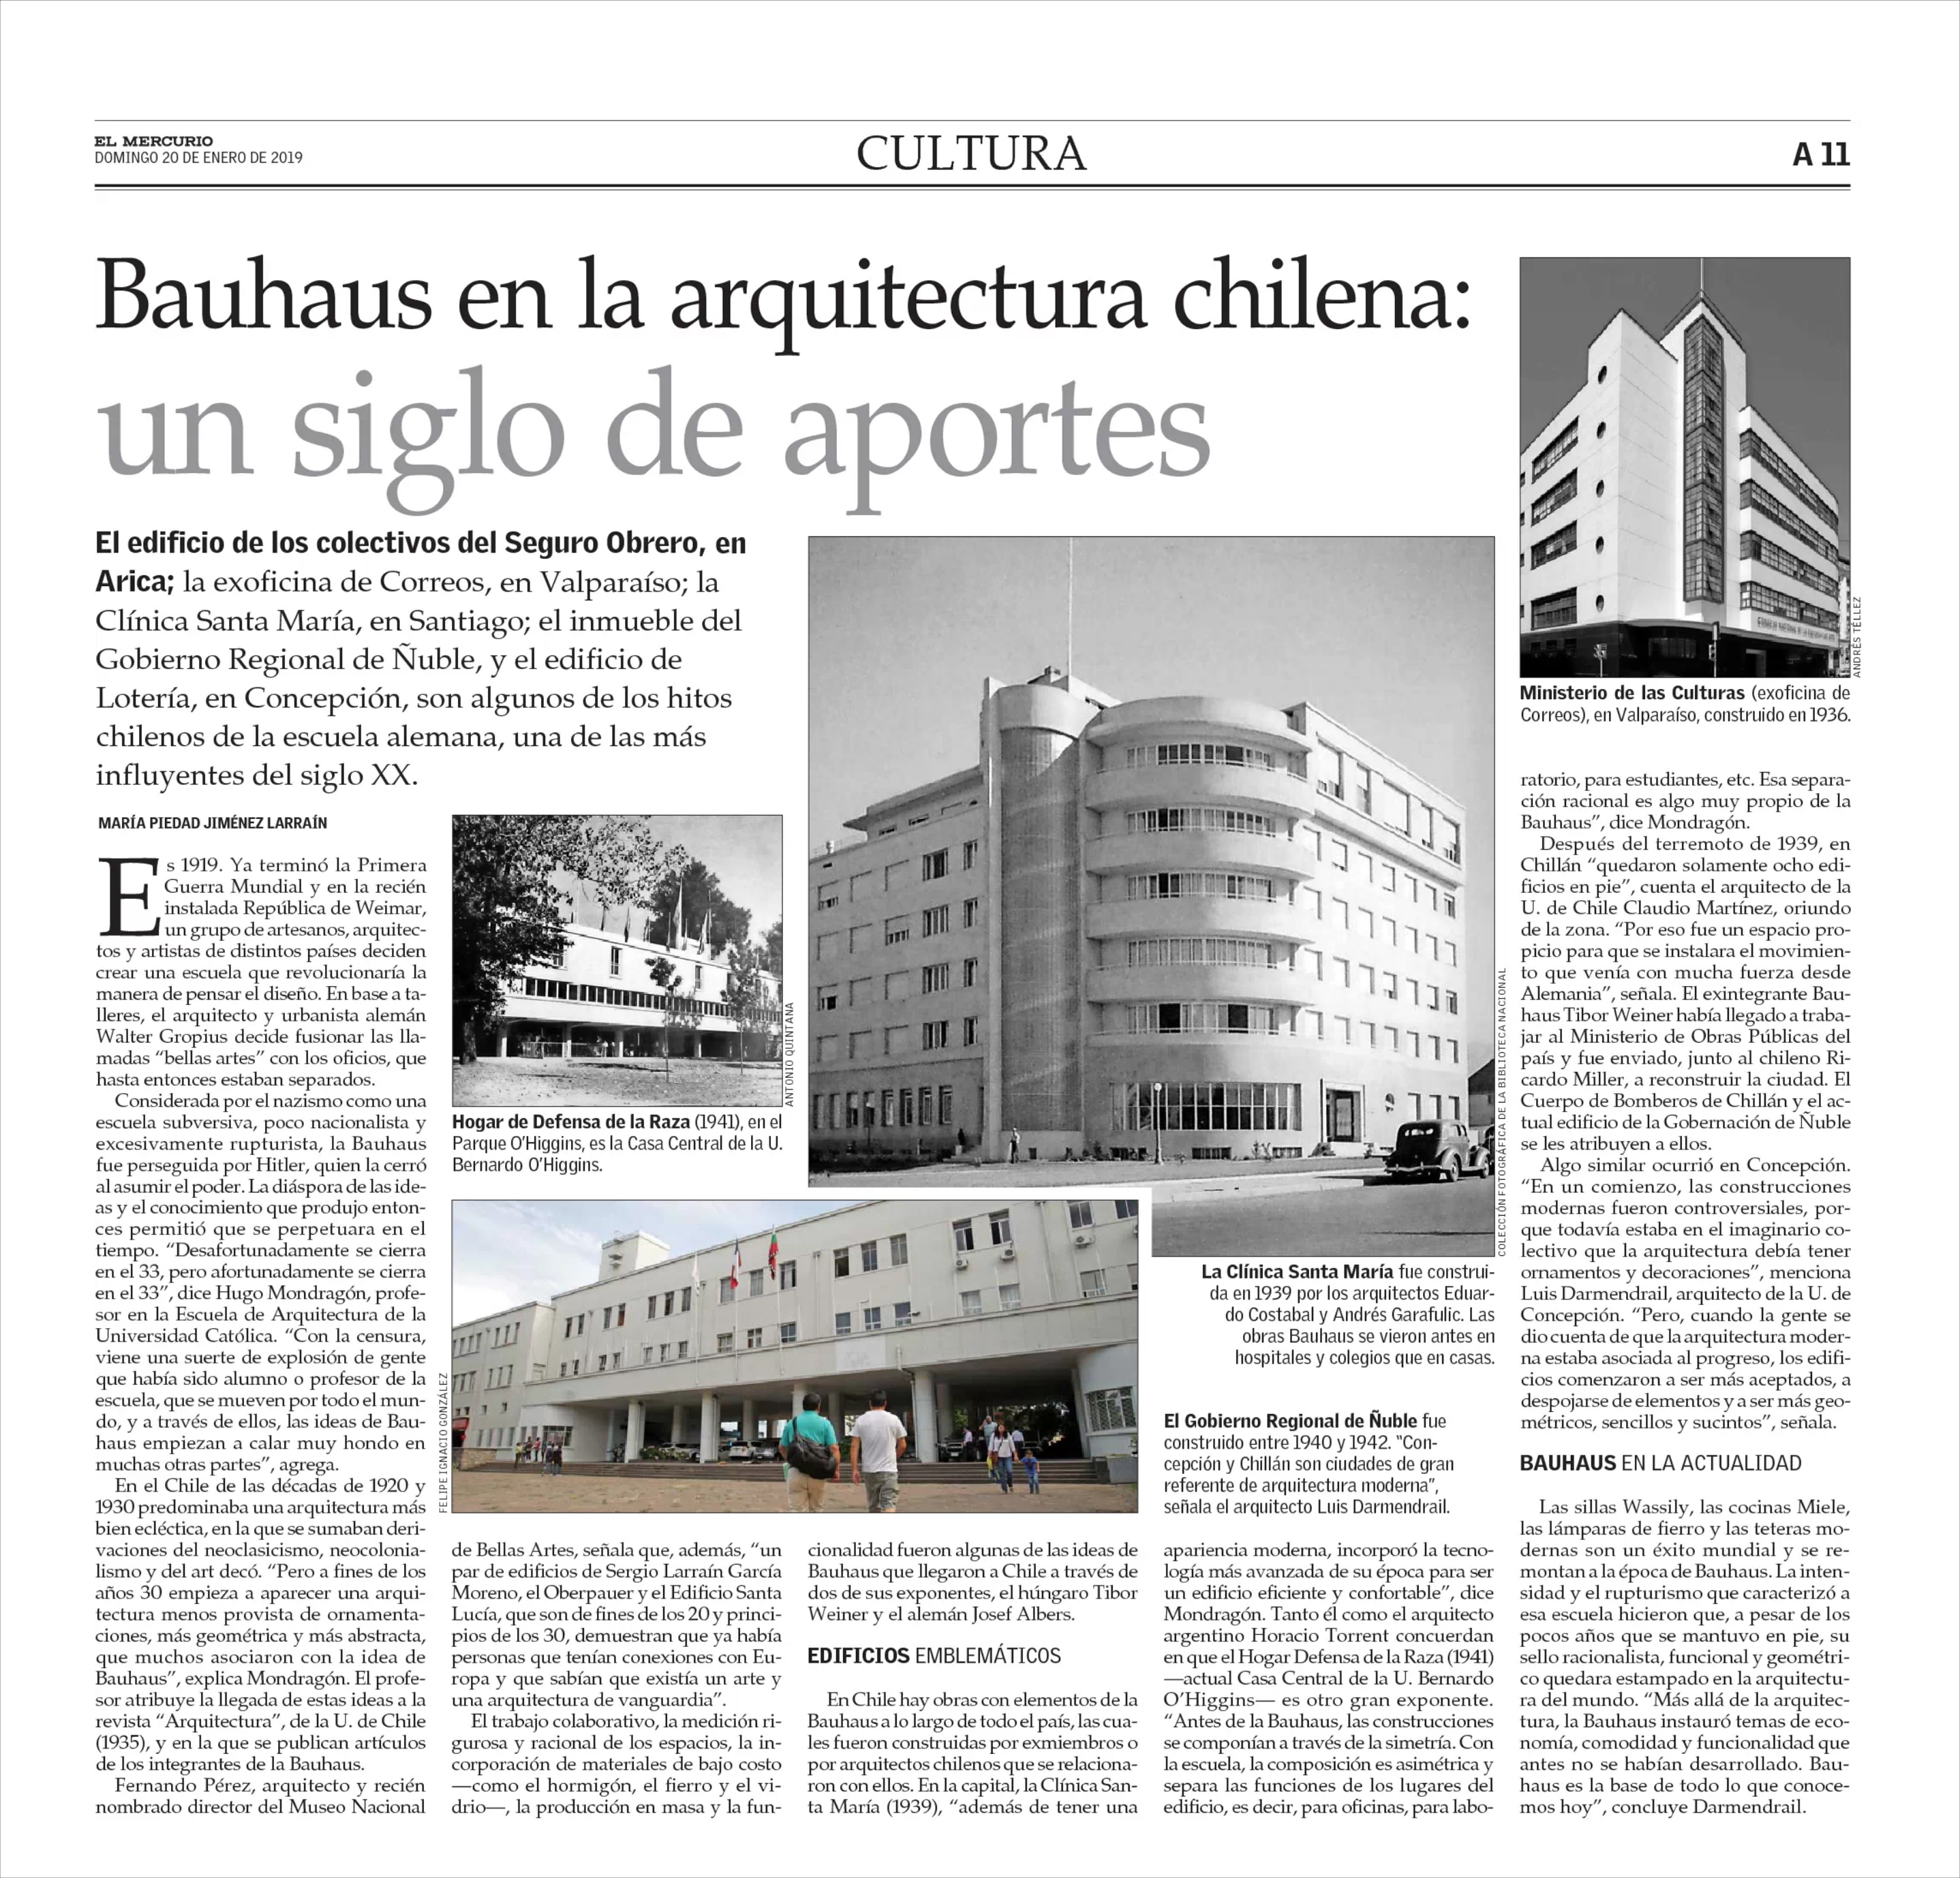 19-01-20_Bauhaus_en_la_arquitectura_chilena-_un_siglo_de_aportes_El_Mercurio.jpg